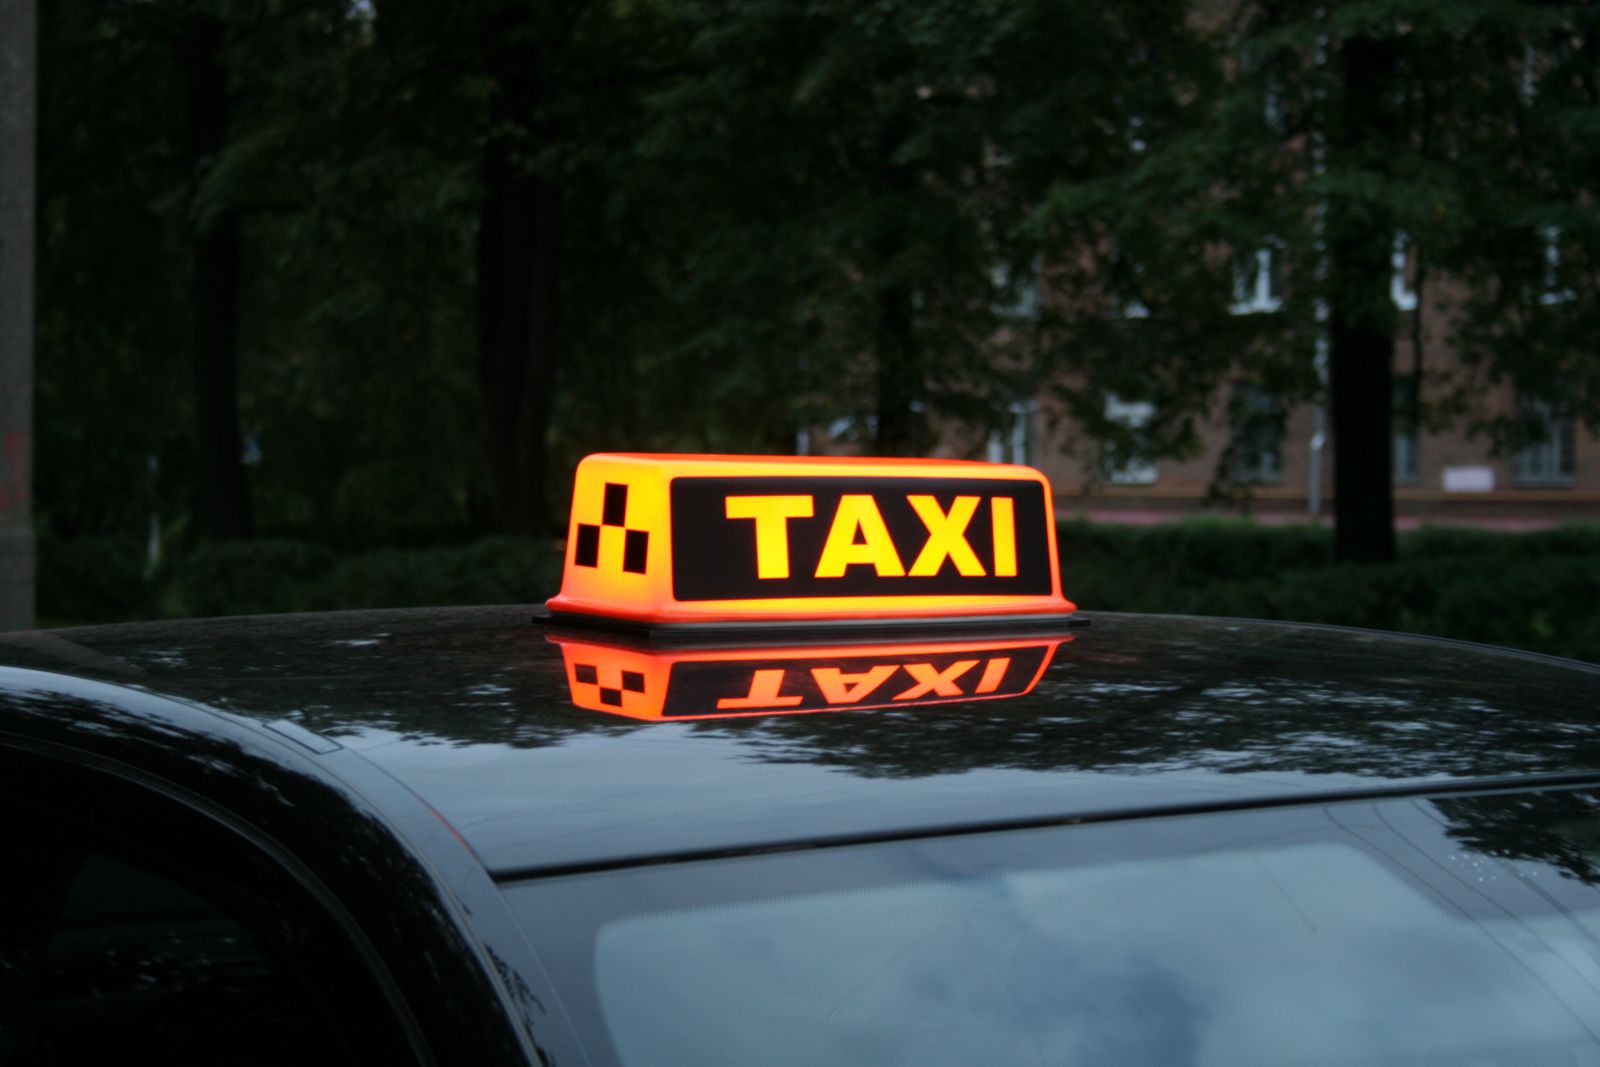 Такси пудож. Такси. Шашечки такси. Шашка такси. Шашечки такси на машине.